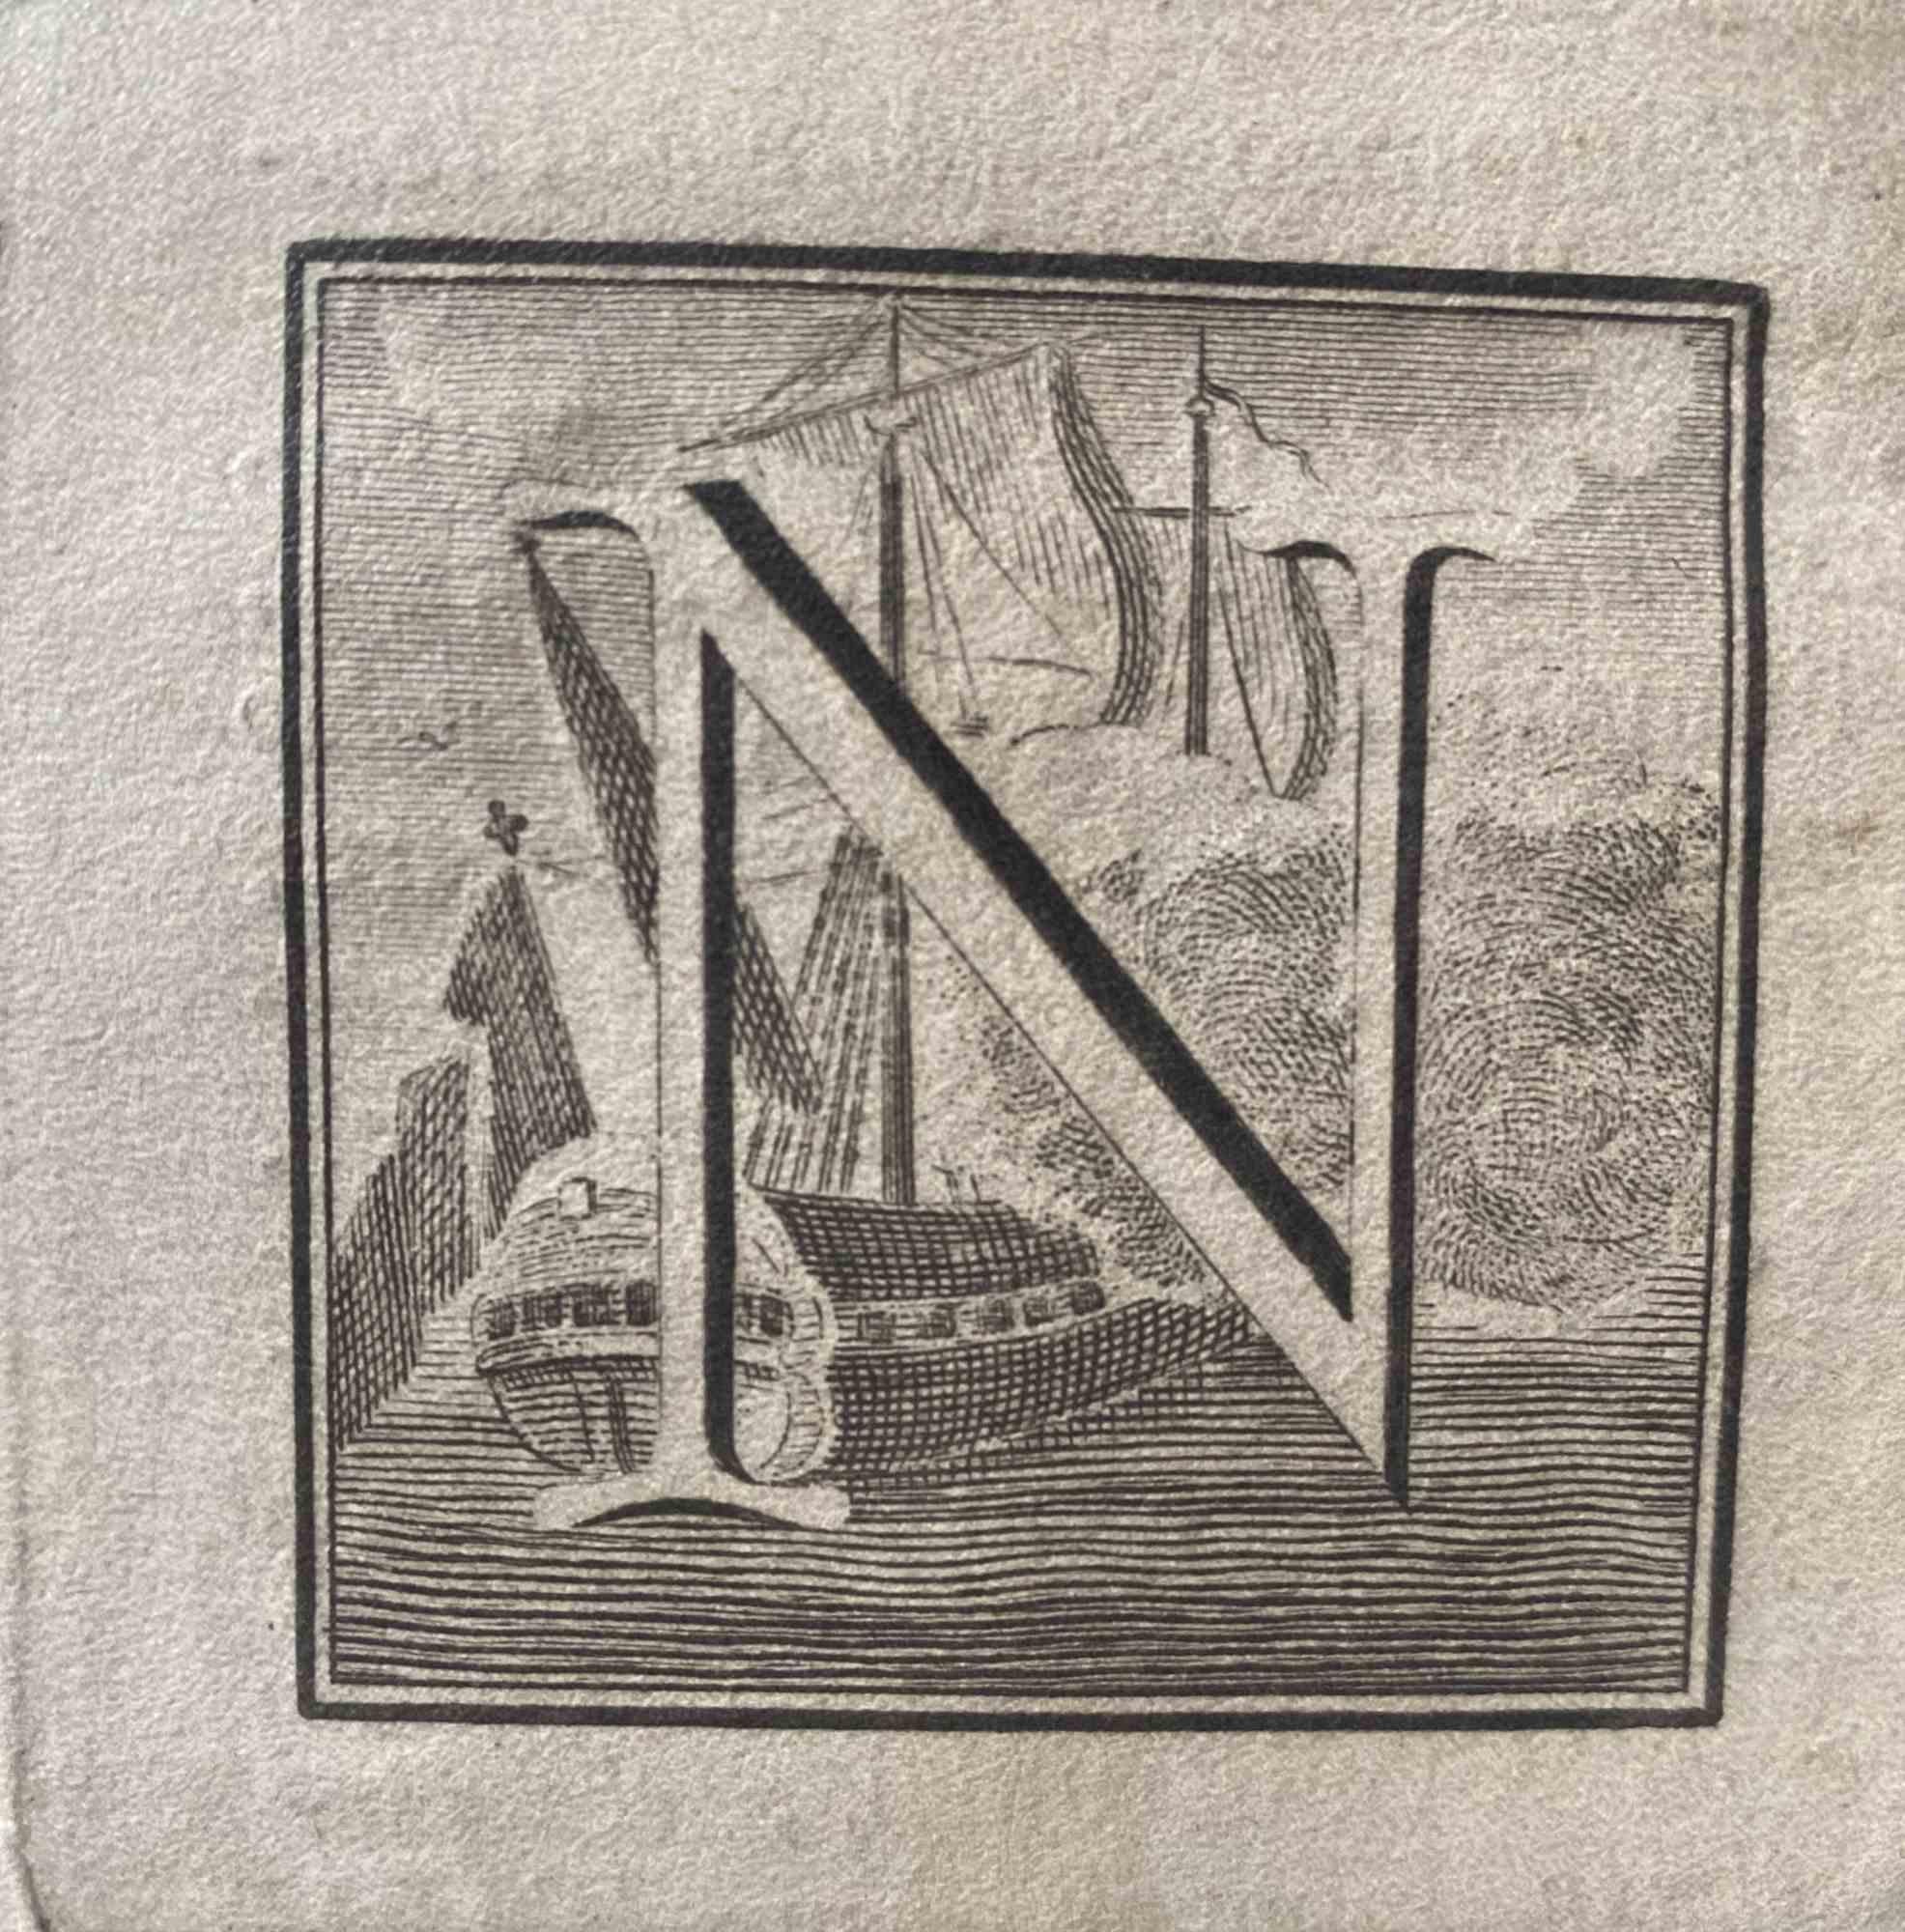 Lettre de l'alphabet N,  de la série "Antiquités d'Herculanum", est une gravure sur papier réalisée par Luigi Vanvitelli au 18ème siècle.

Bon état avec quelques pliures.

La gravure appartient à la suite d'estampes "Antiquités d'Herculanum